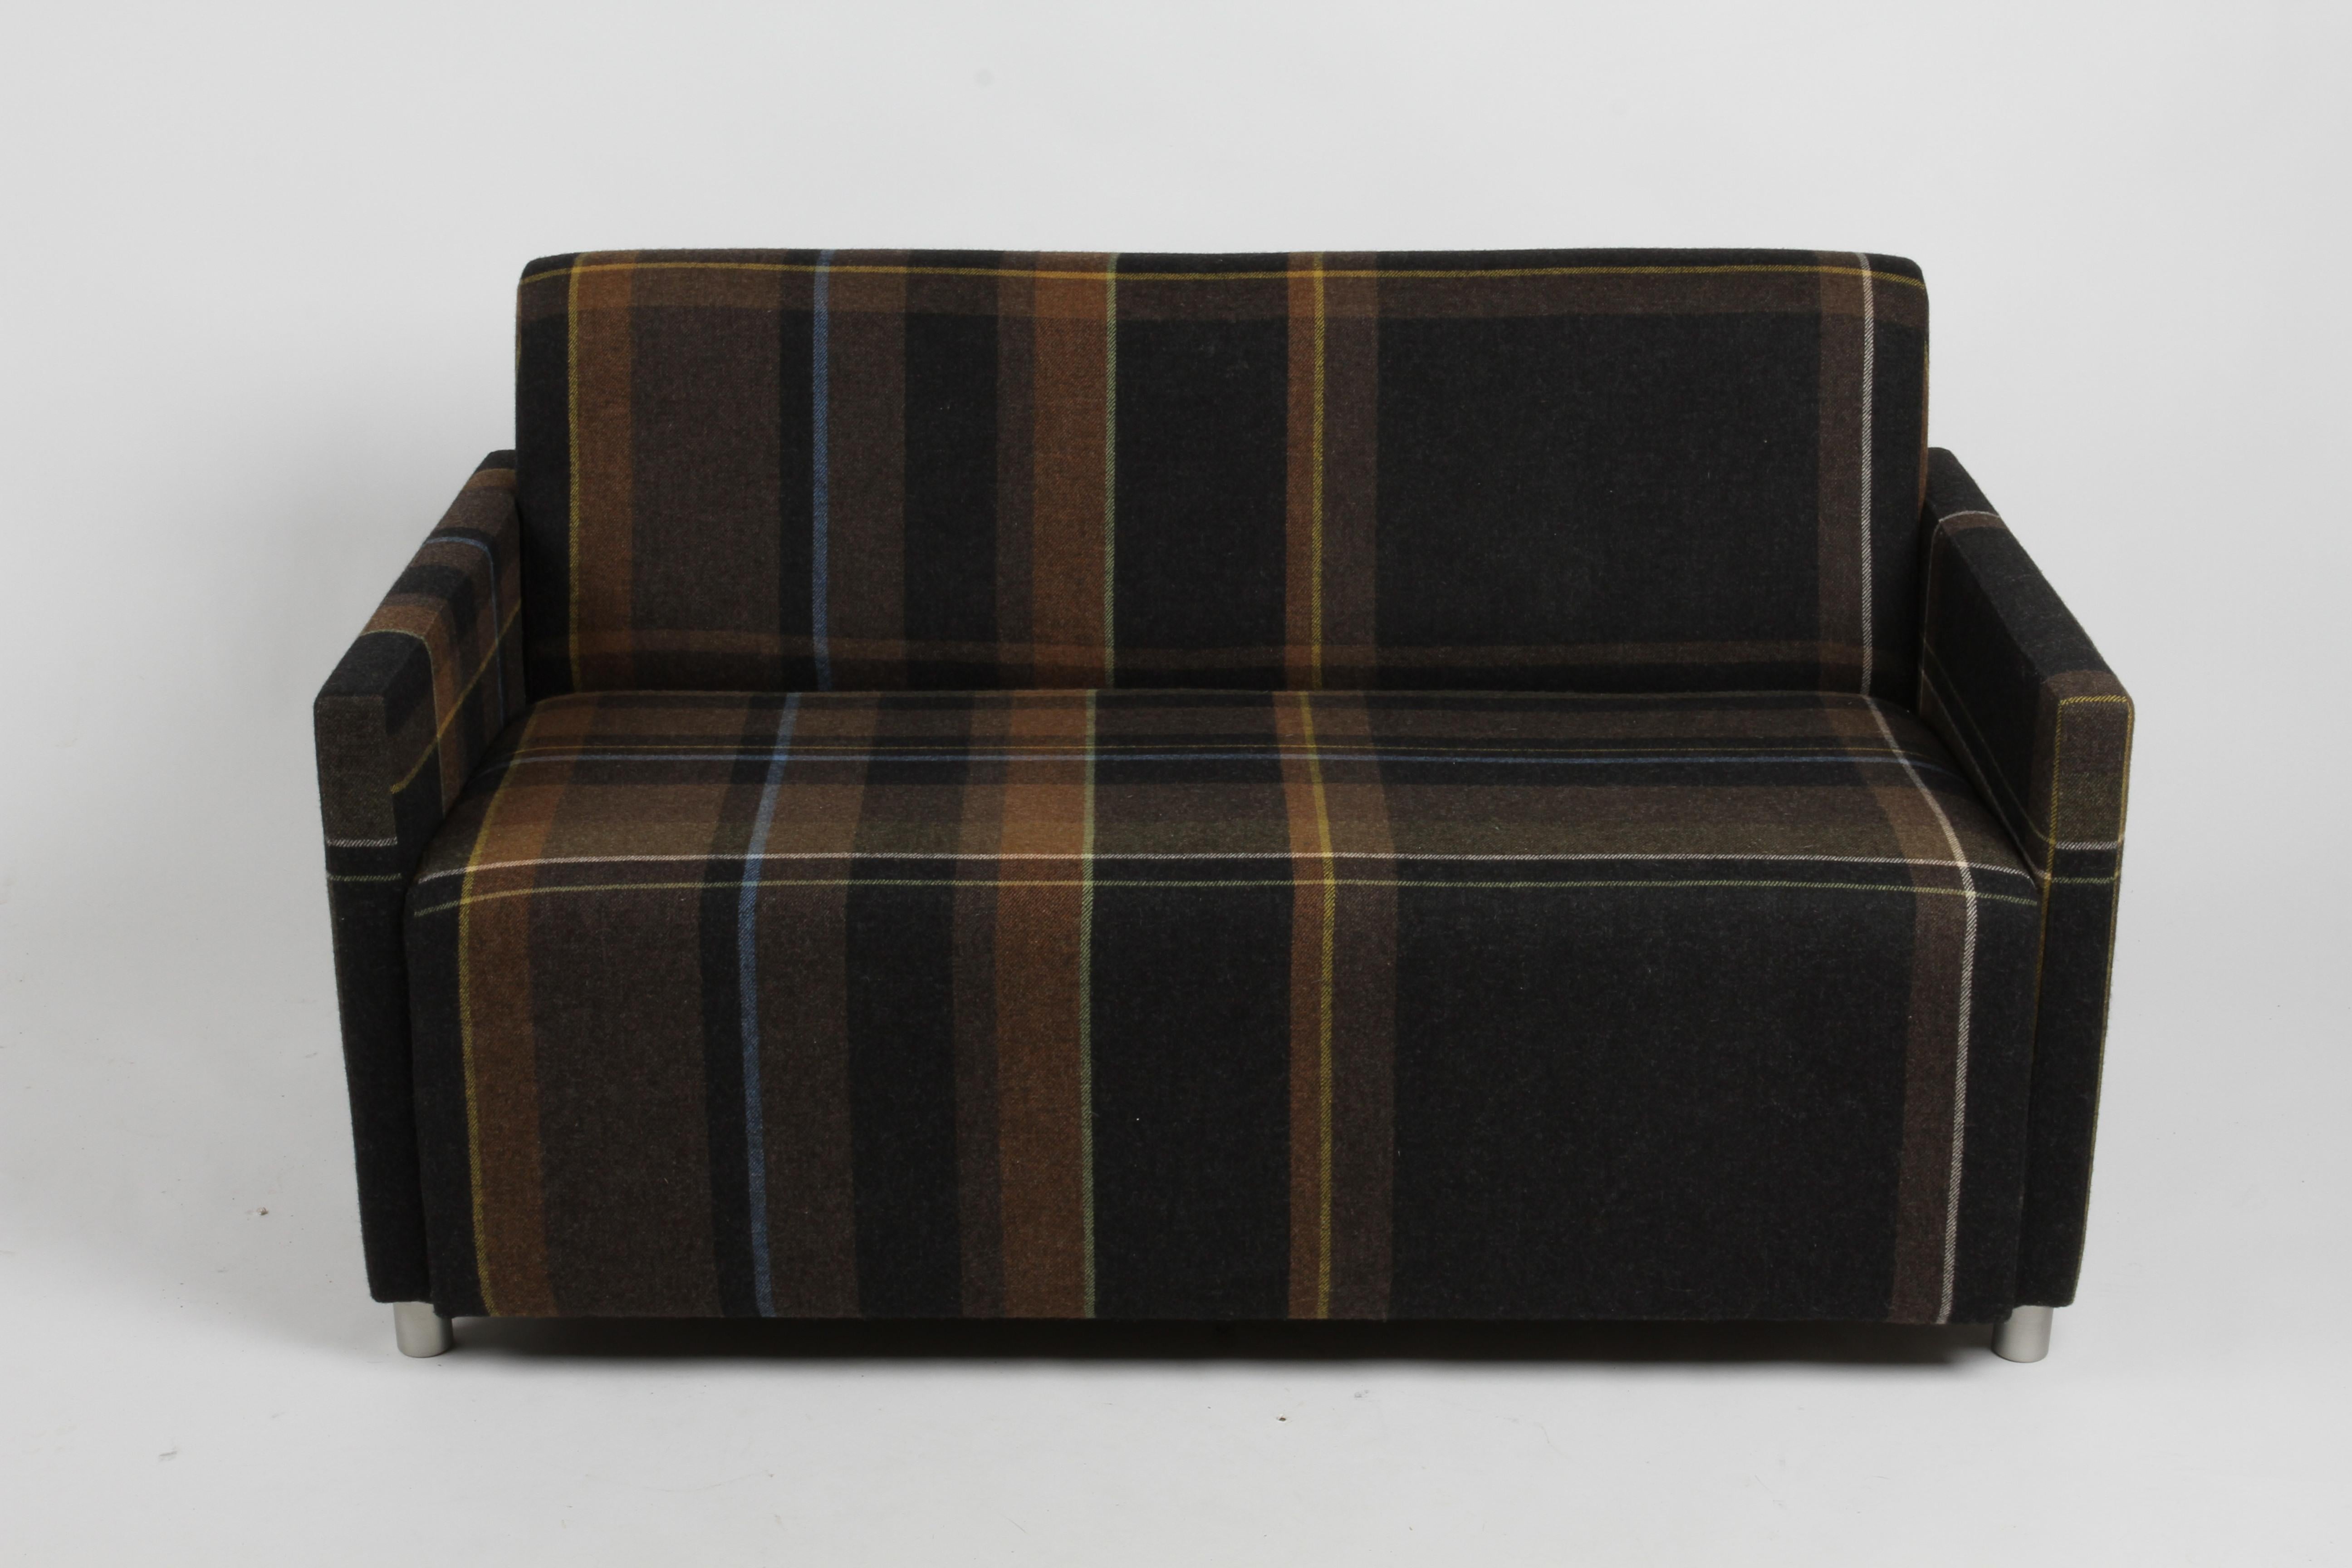 Dieses Coupe Tuxedo-Sofa, das Dennie Pimental und John Duffy für Coalesse entworfen haben, ist ein zeitgenössisches Sofa mit schlanken Linien auf runden Metallbeinen. Wunderschön gepolstert in Paul Smith by Maharam UK, das übertriebene Plaid-Muster,